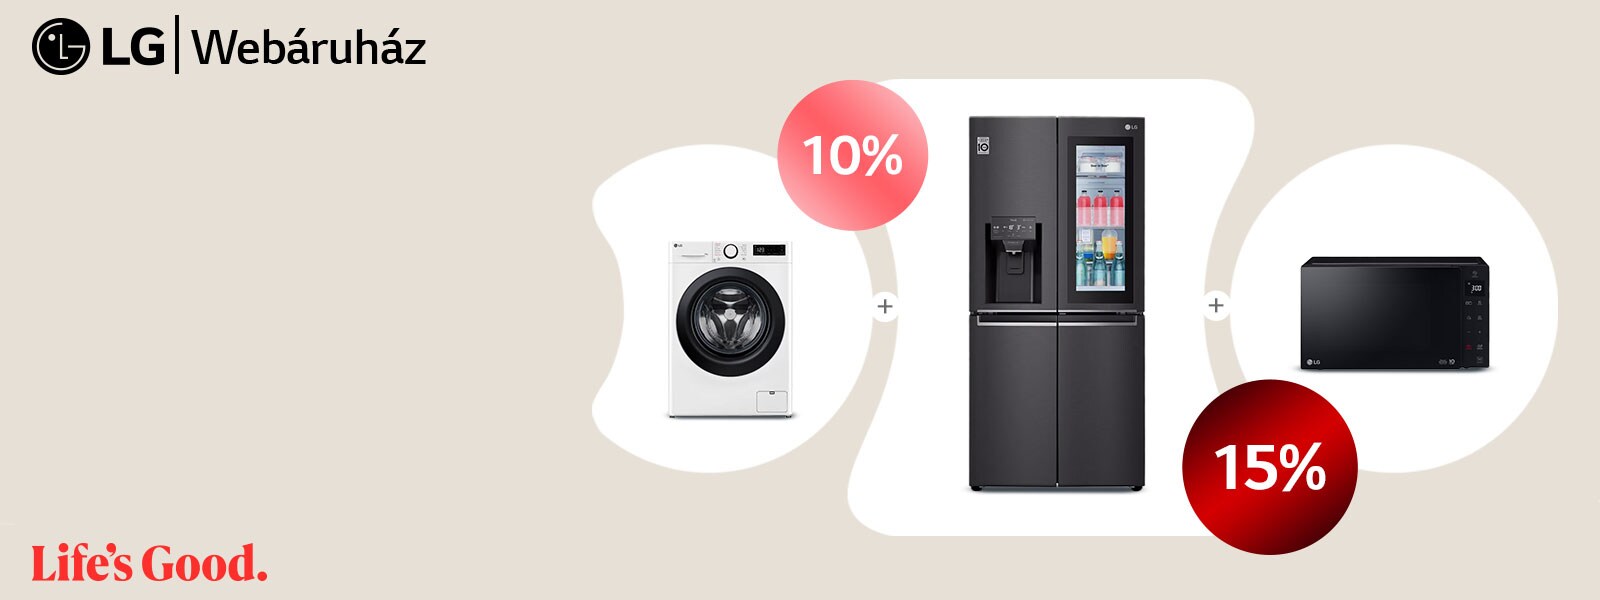 Vásároljon egyszerre 2 háztartási készüléket 10%, vagy 3 háztartási készüléket 15% kedvezménnyel az LG Webáruházból!